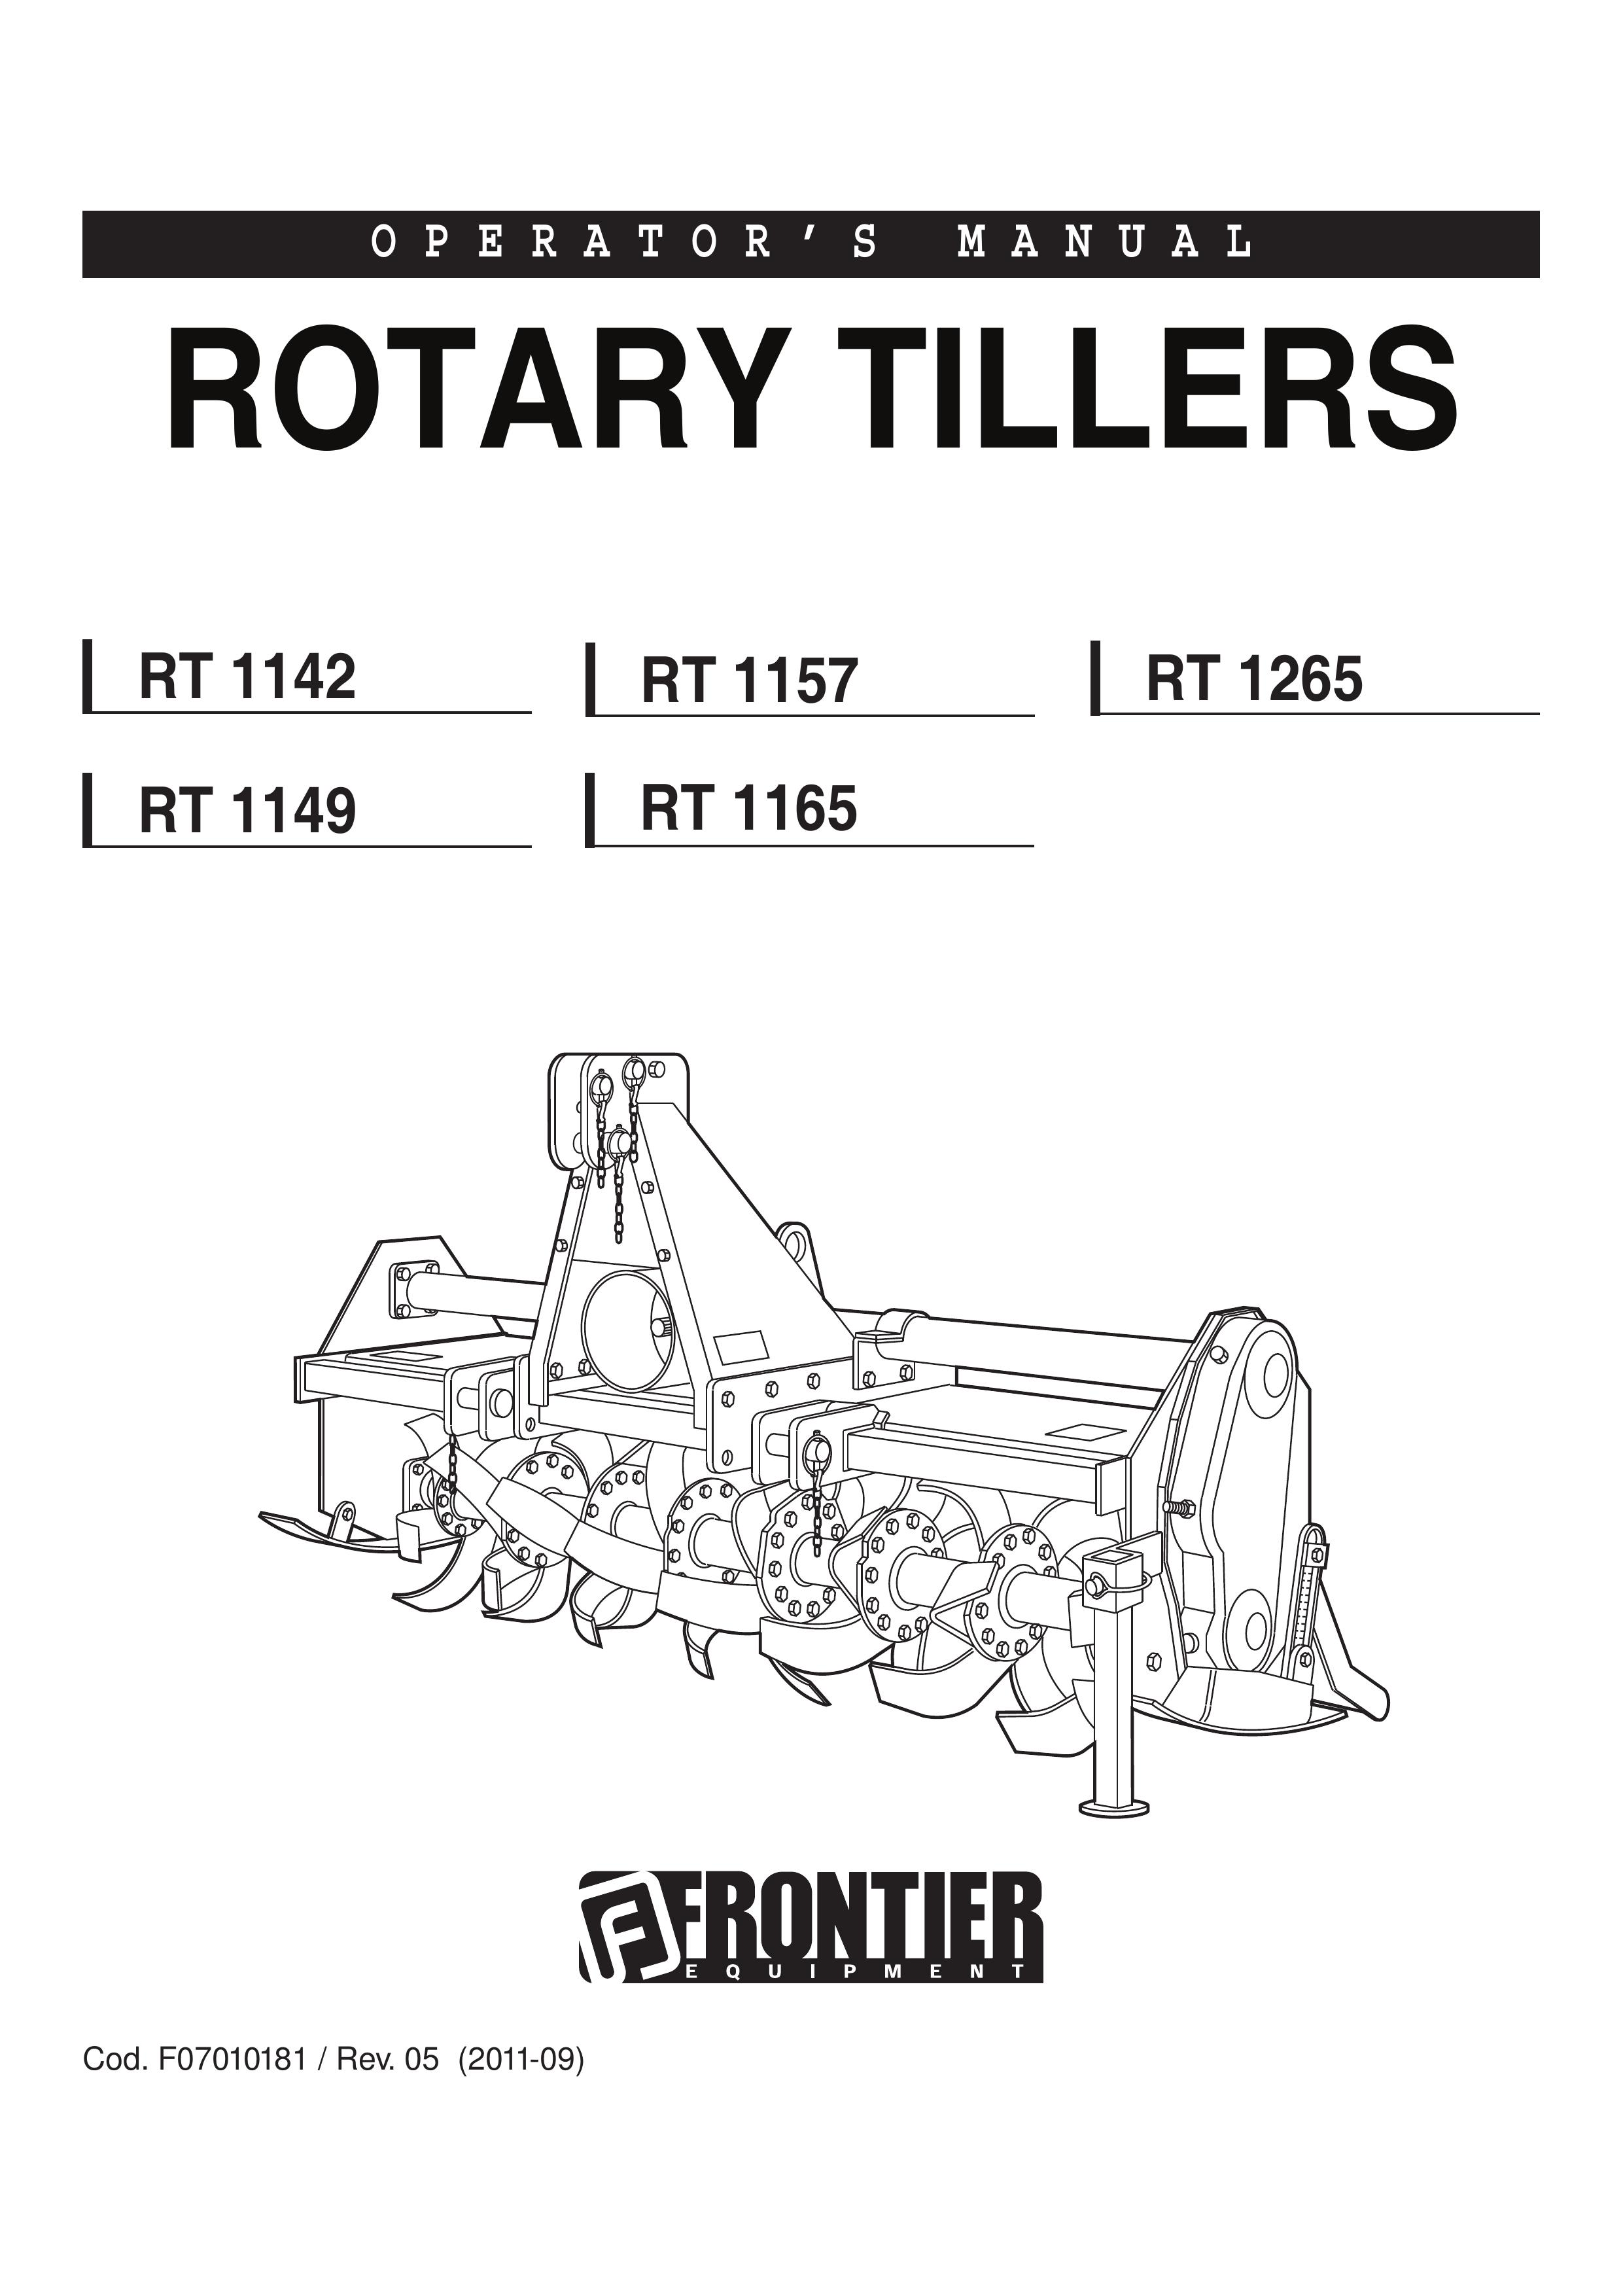 John Deere RT 1265 Tiller User Manual